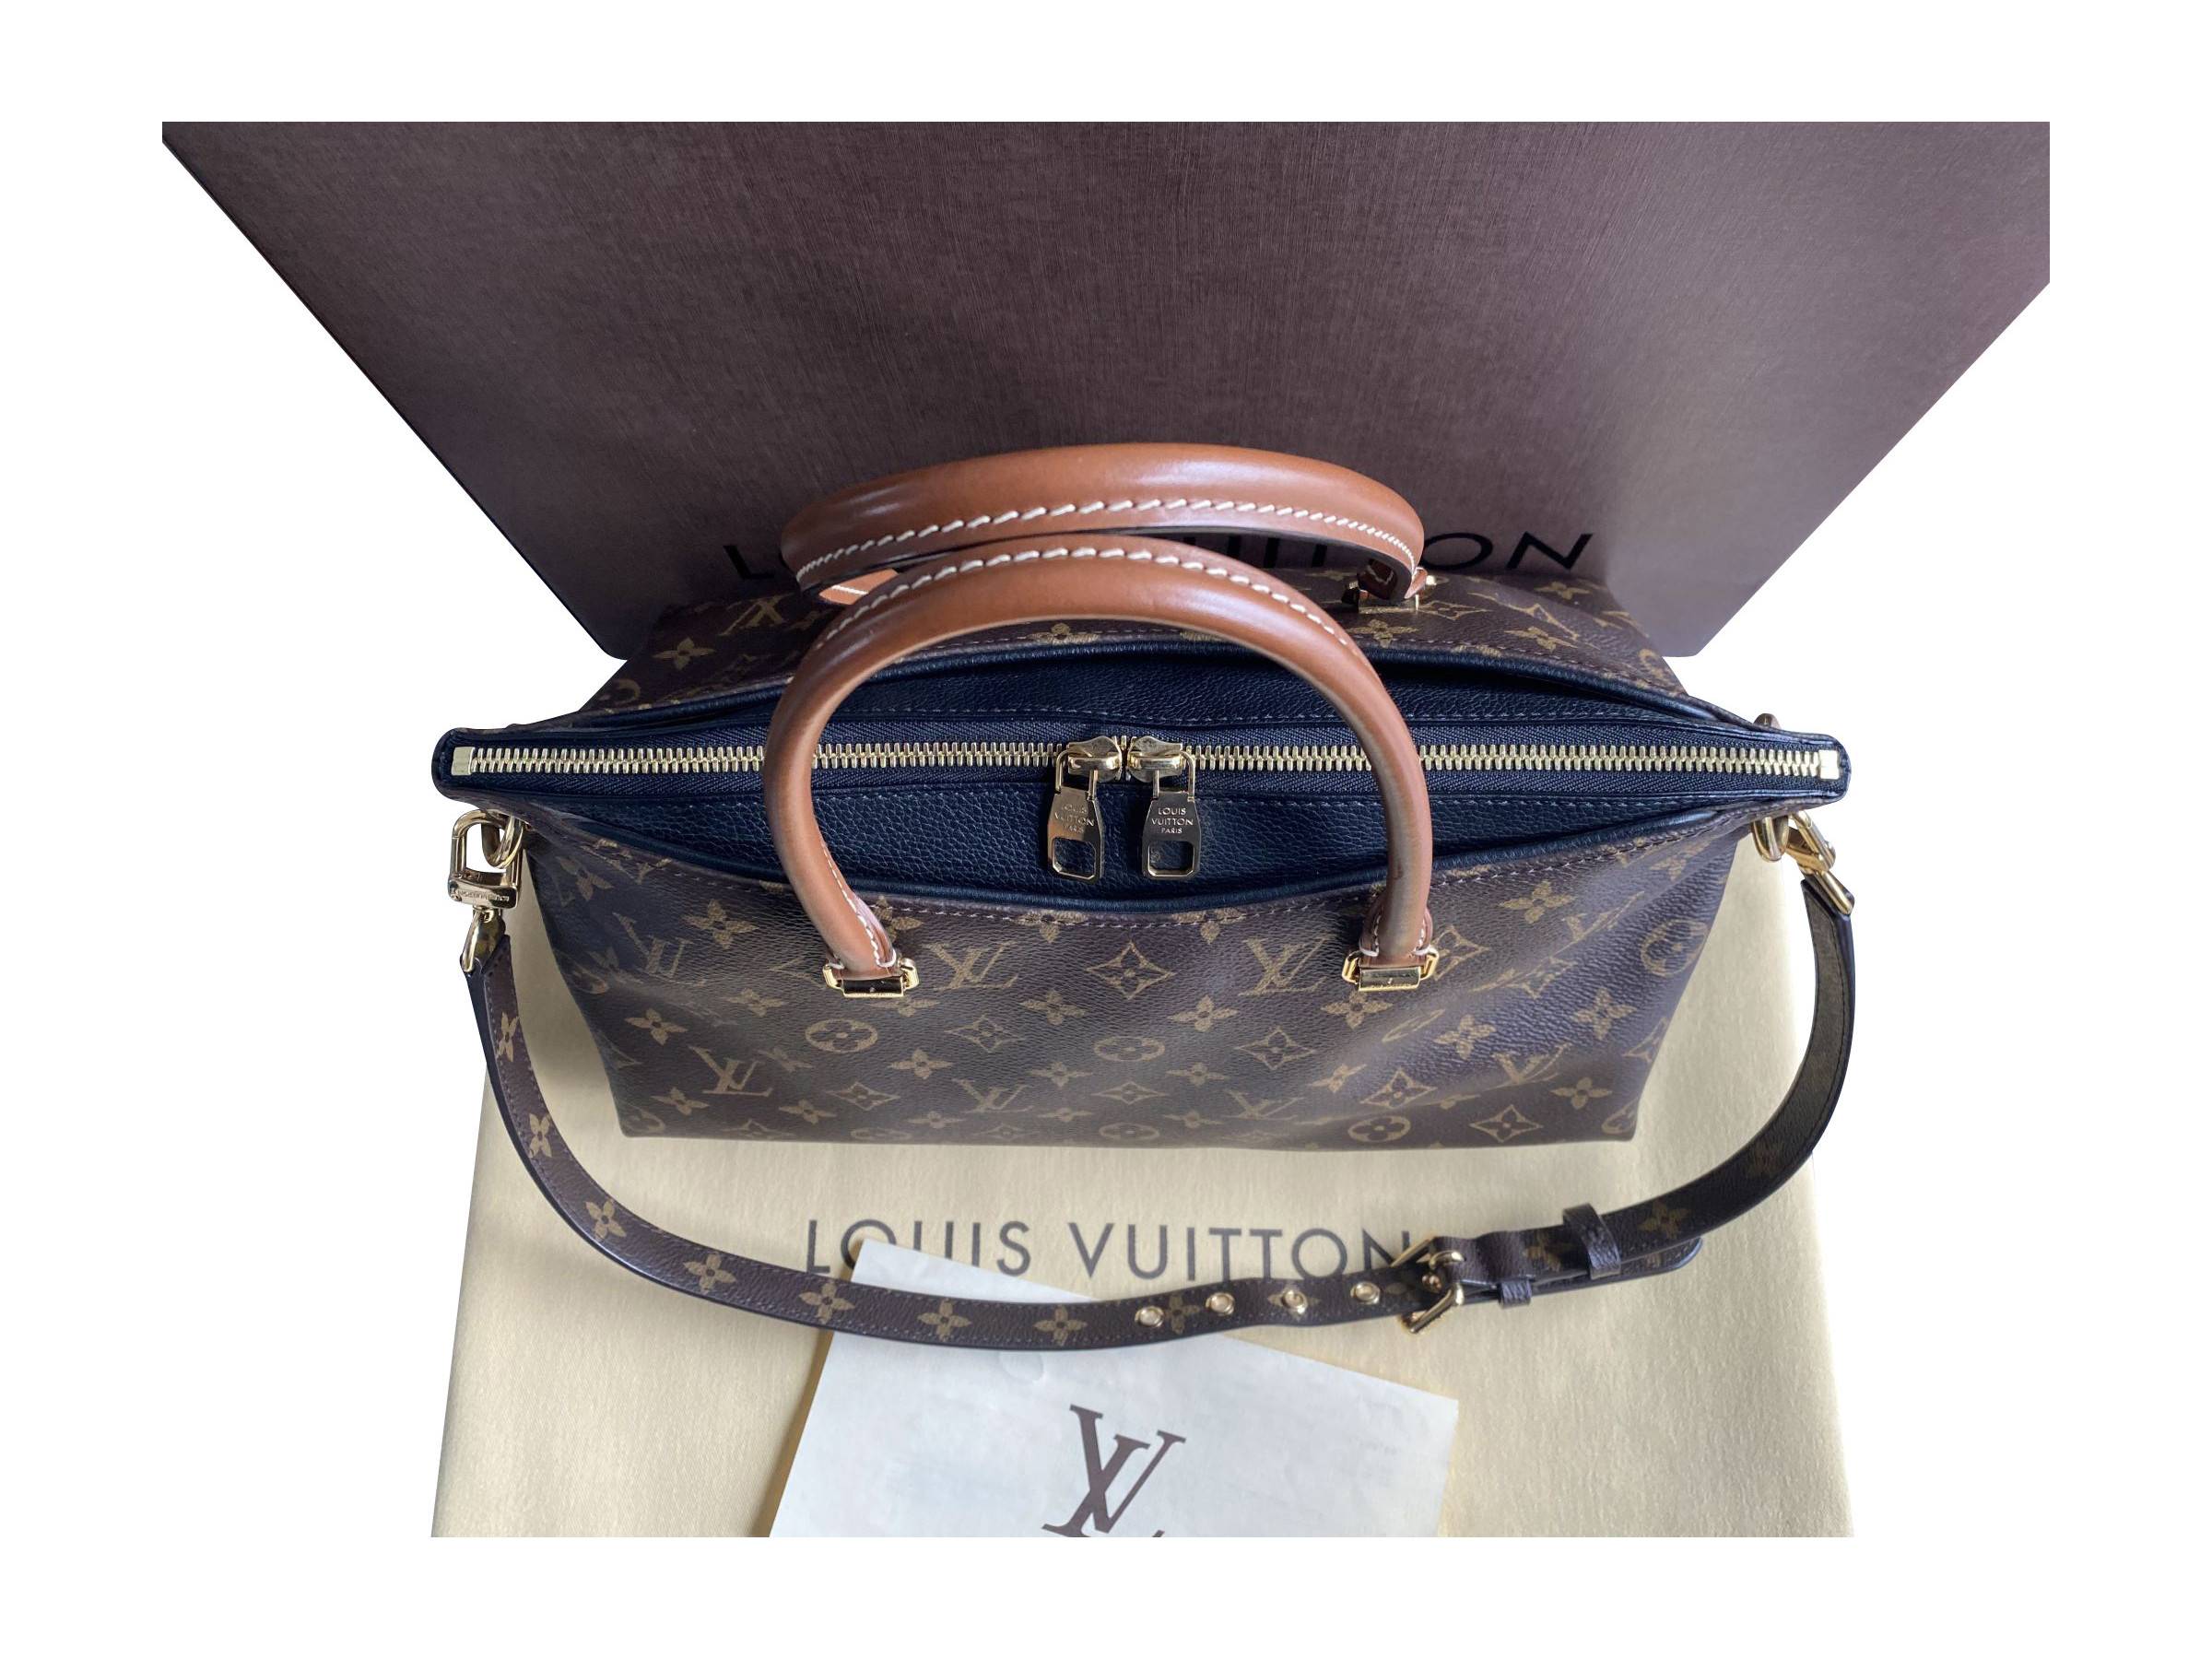 VERKAUFT - Louis Vuitton Tasche Handtasche Pallas MM Monogram Canvas schwarz  * TOP mit Beleg